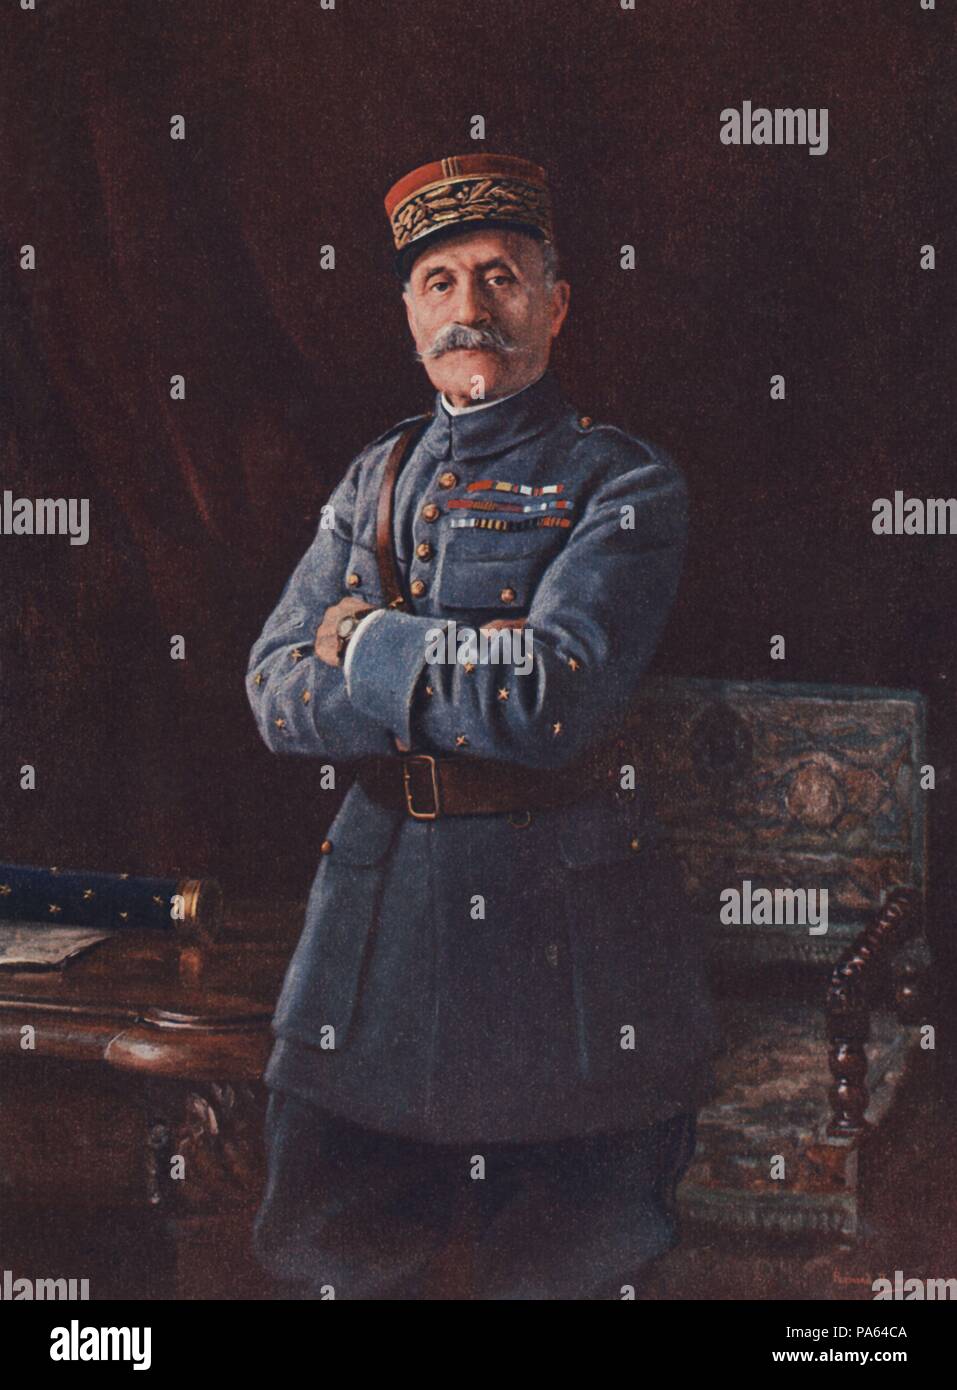 Primera guerra mundial (1914-1918). Foch, Ferdinand (1851-1929), militar francés, comandante en jefe de los ejércitos aliados. Grabado de 1916. Stock Photo